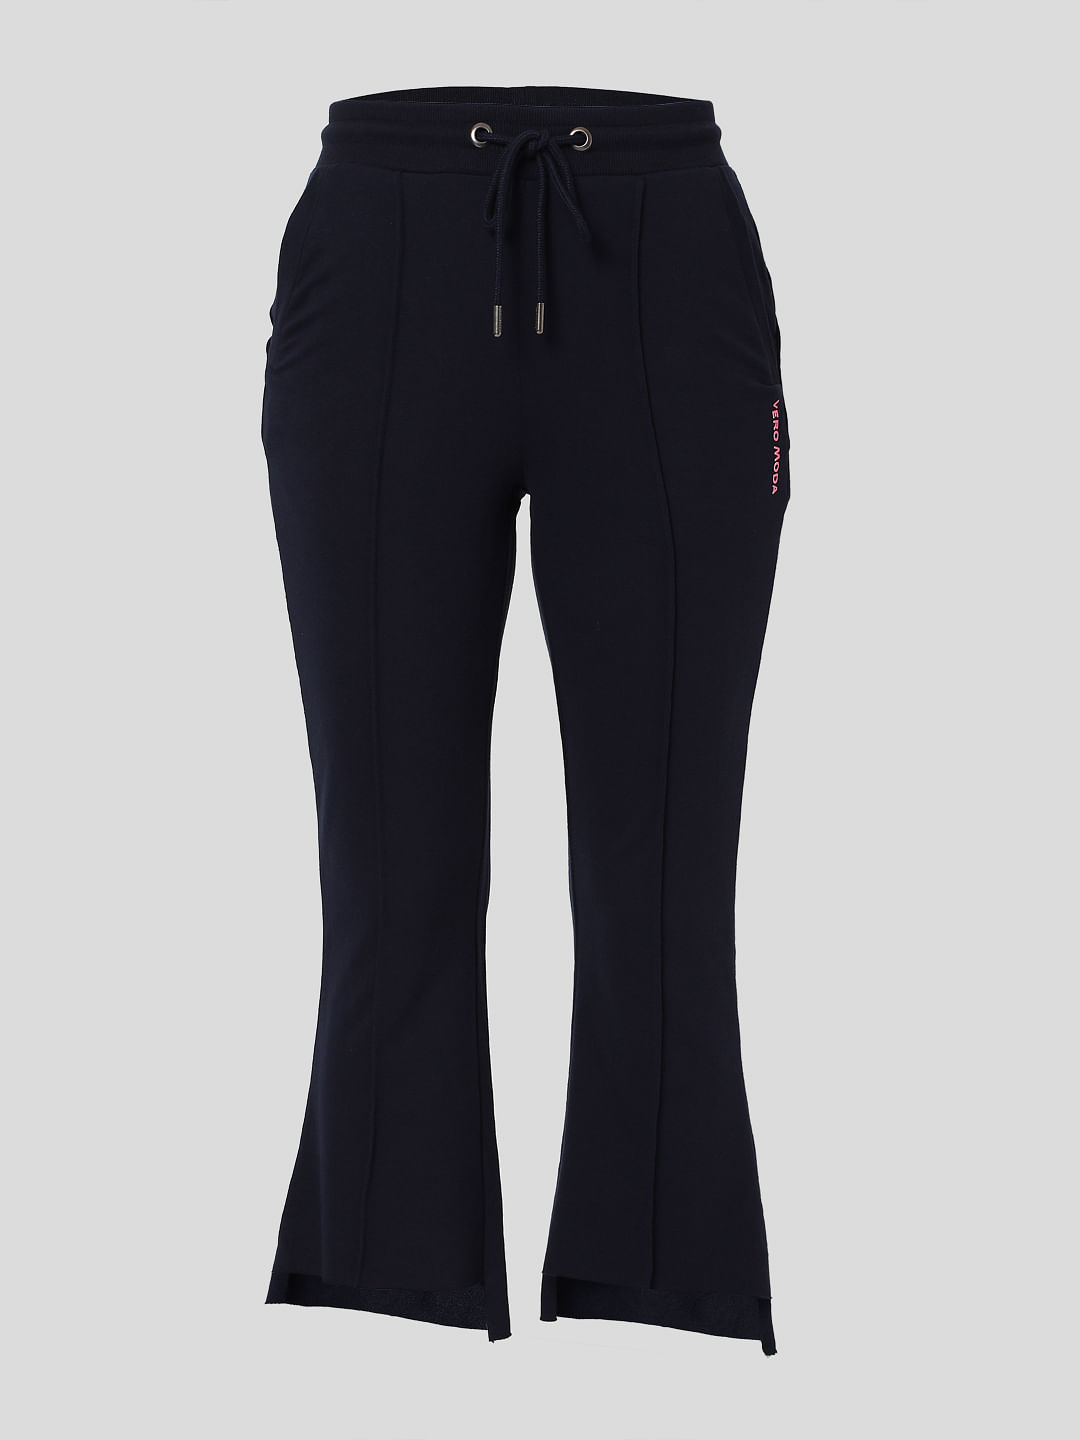 Buy Vero Moda Black  White Checks Pants for Women Online  Tata CLiQ